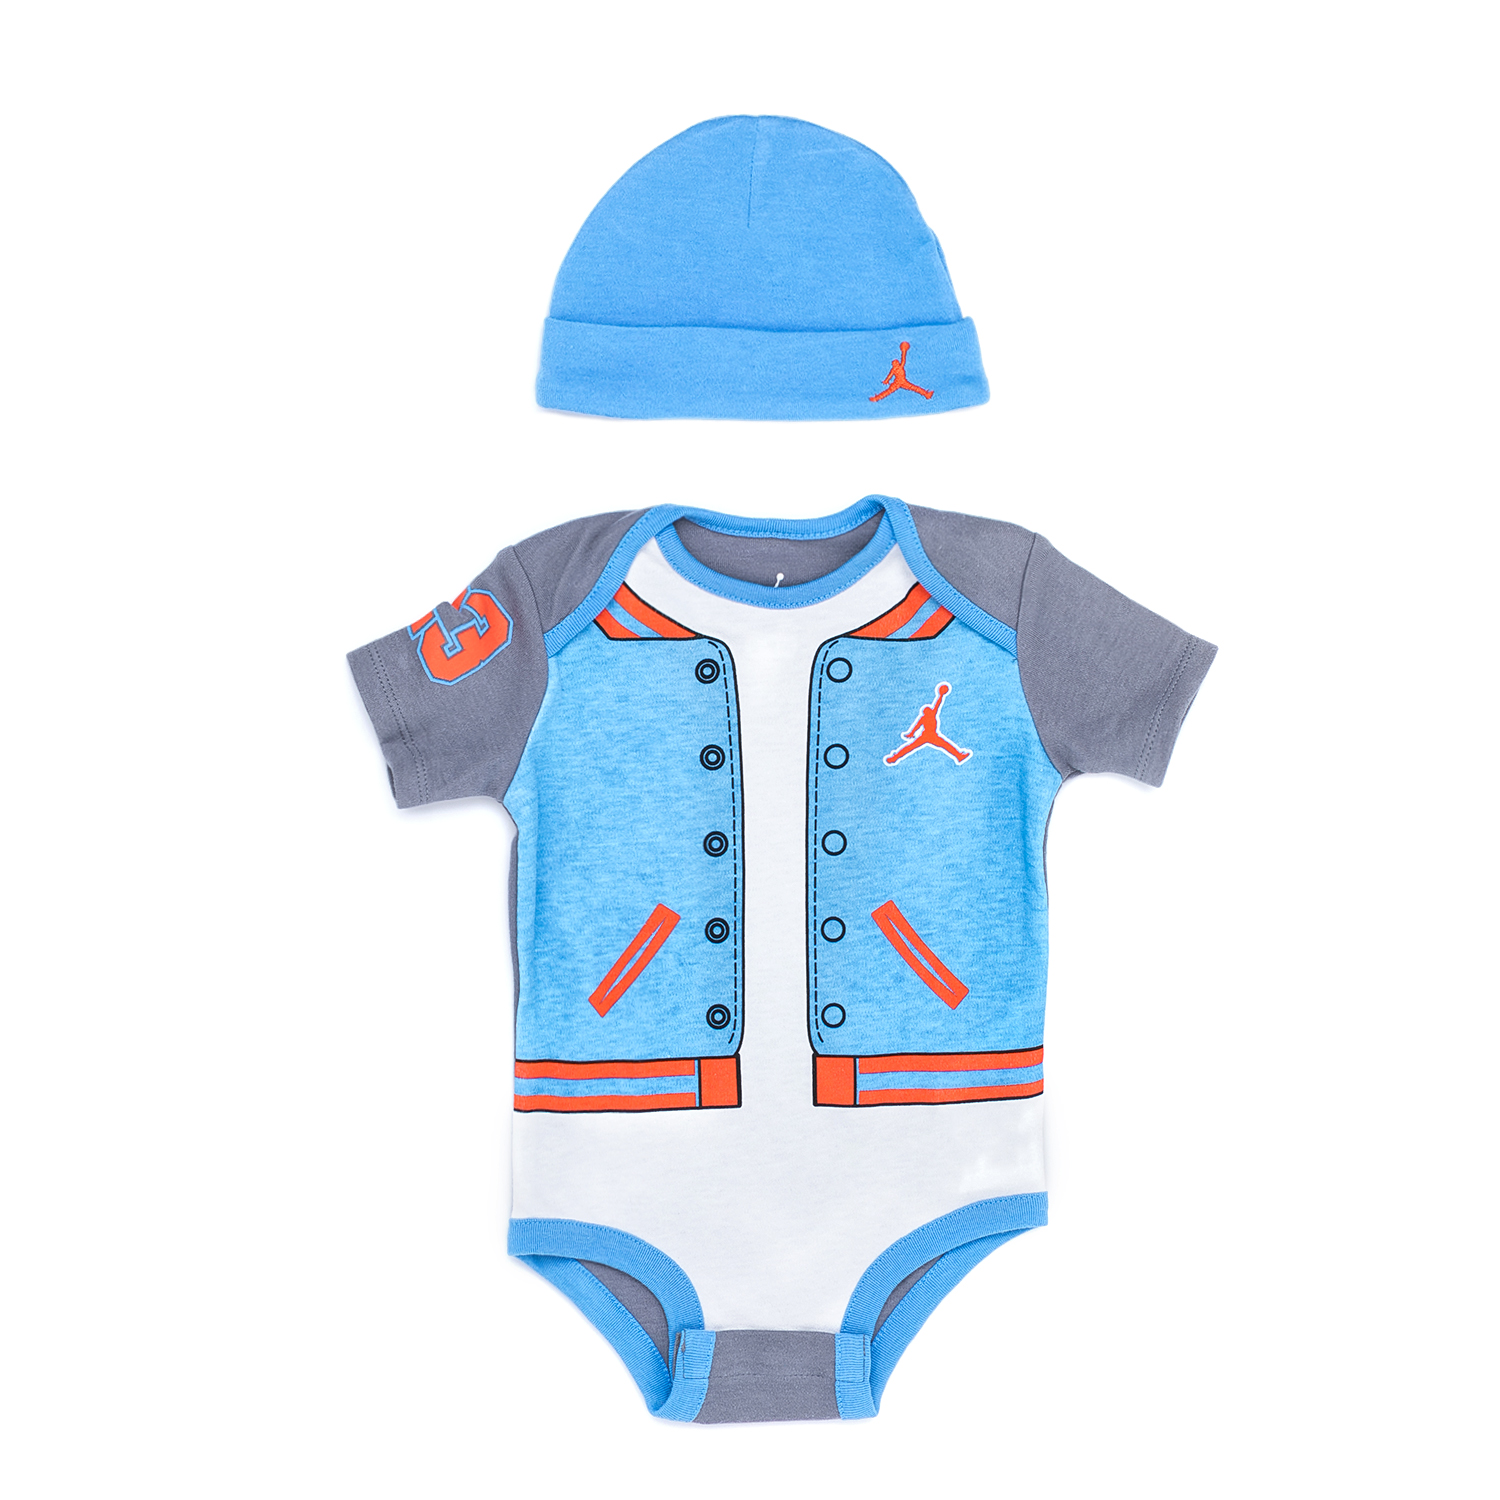 Παιδικά/Baby/Ρούχα/Σετ NIKE - Βρεφικό σετ NIKE μπλε